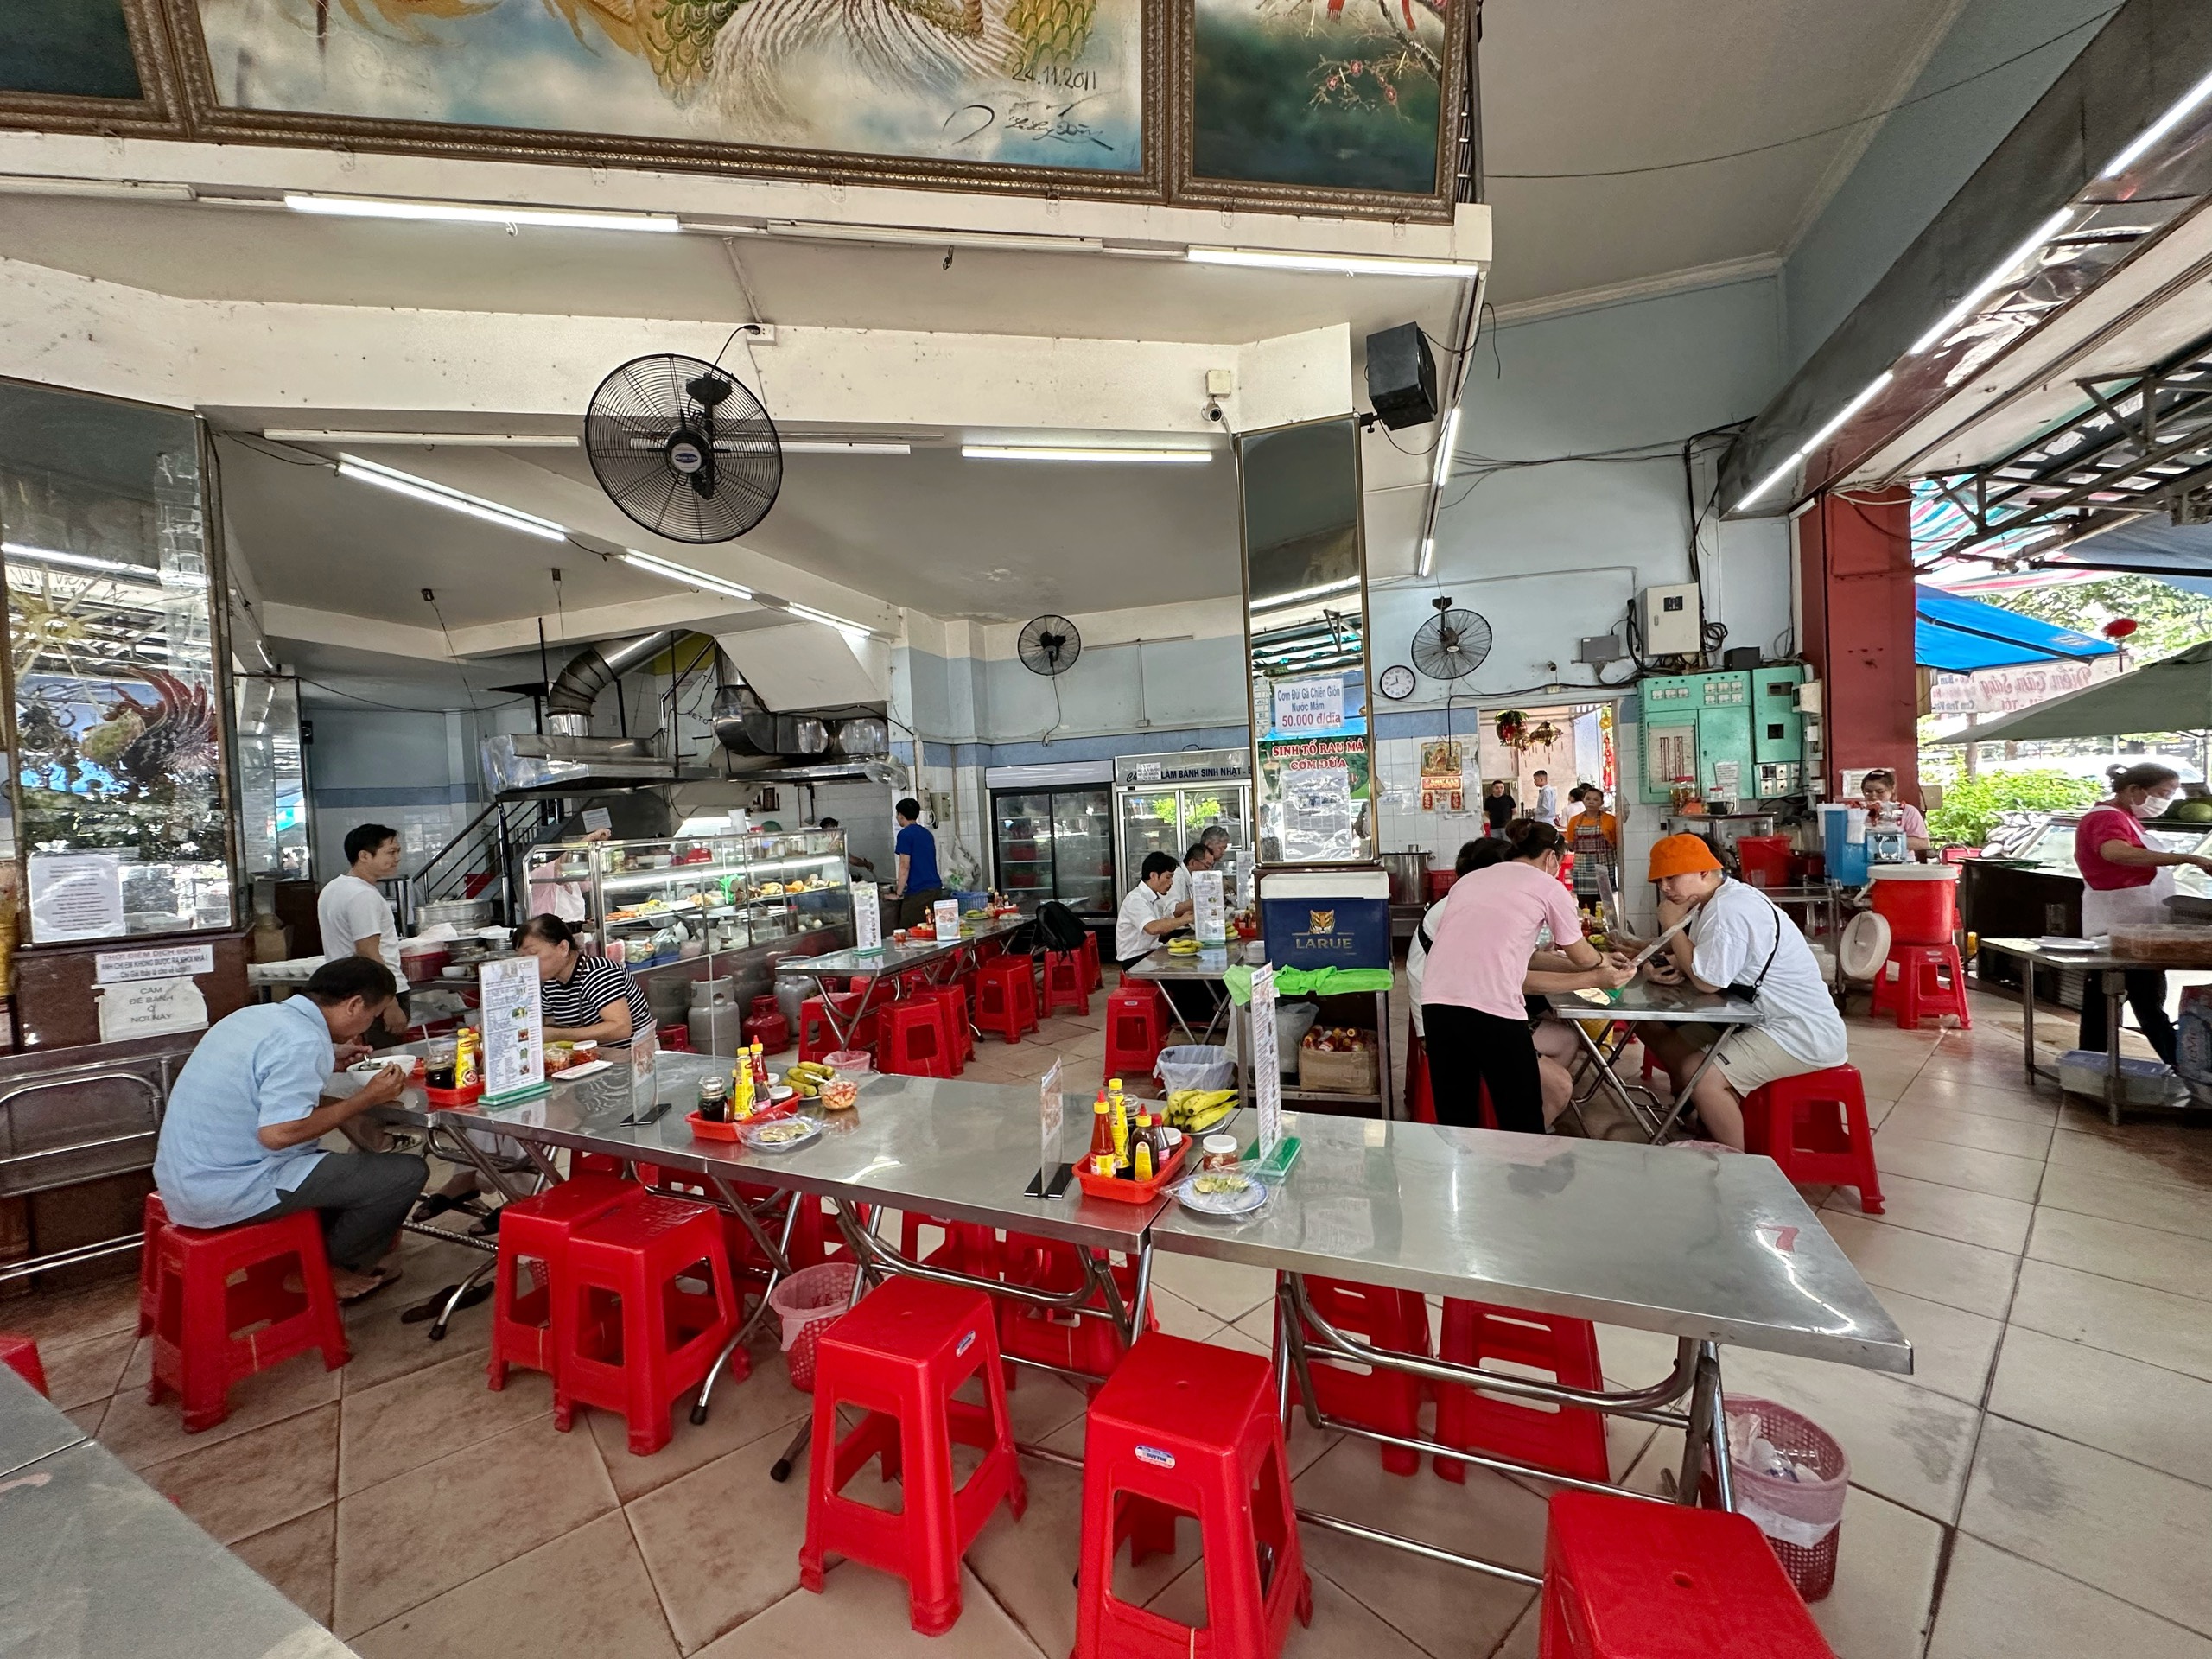 Hôm nay Michelin Guide công bố danh sách quán ăn ở Việt Nam: Bánh mì liệu có đánh rớt như 2023?- Ảnh 6.